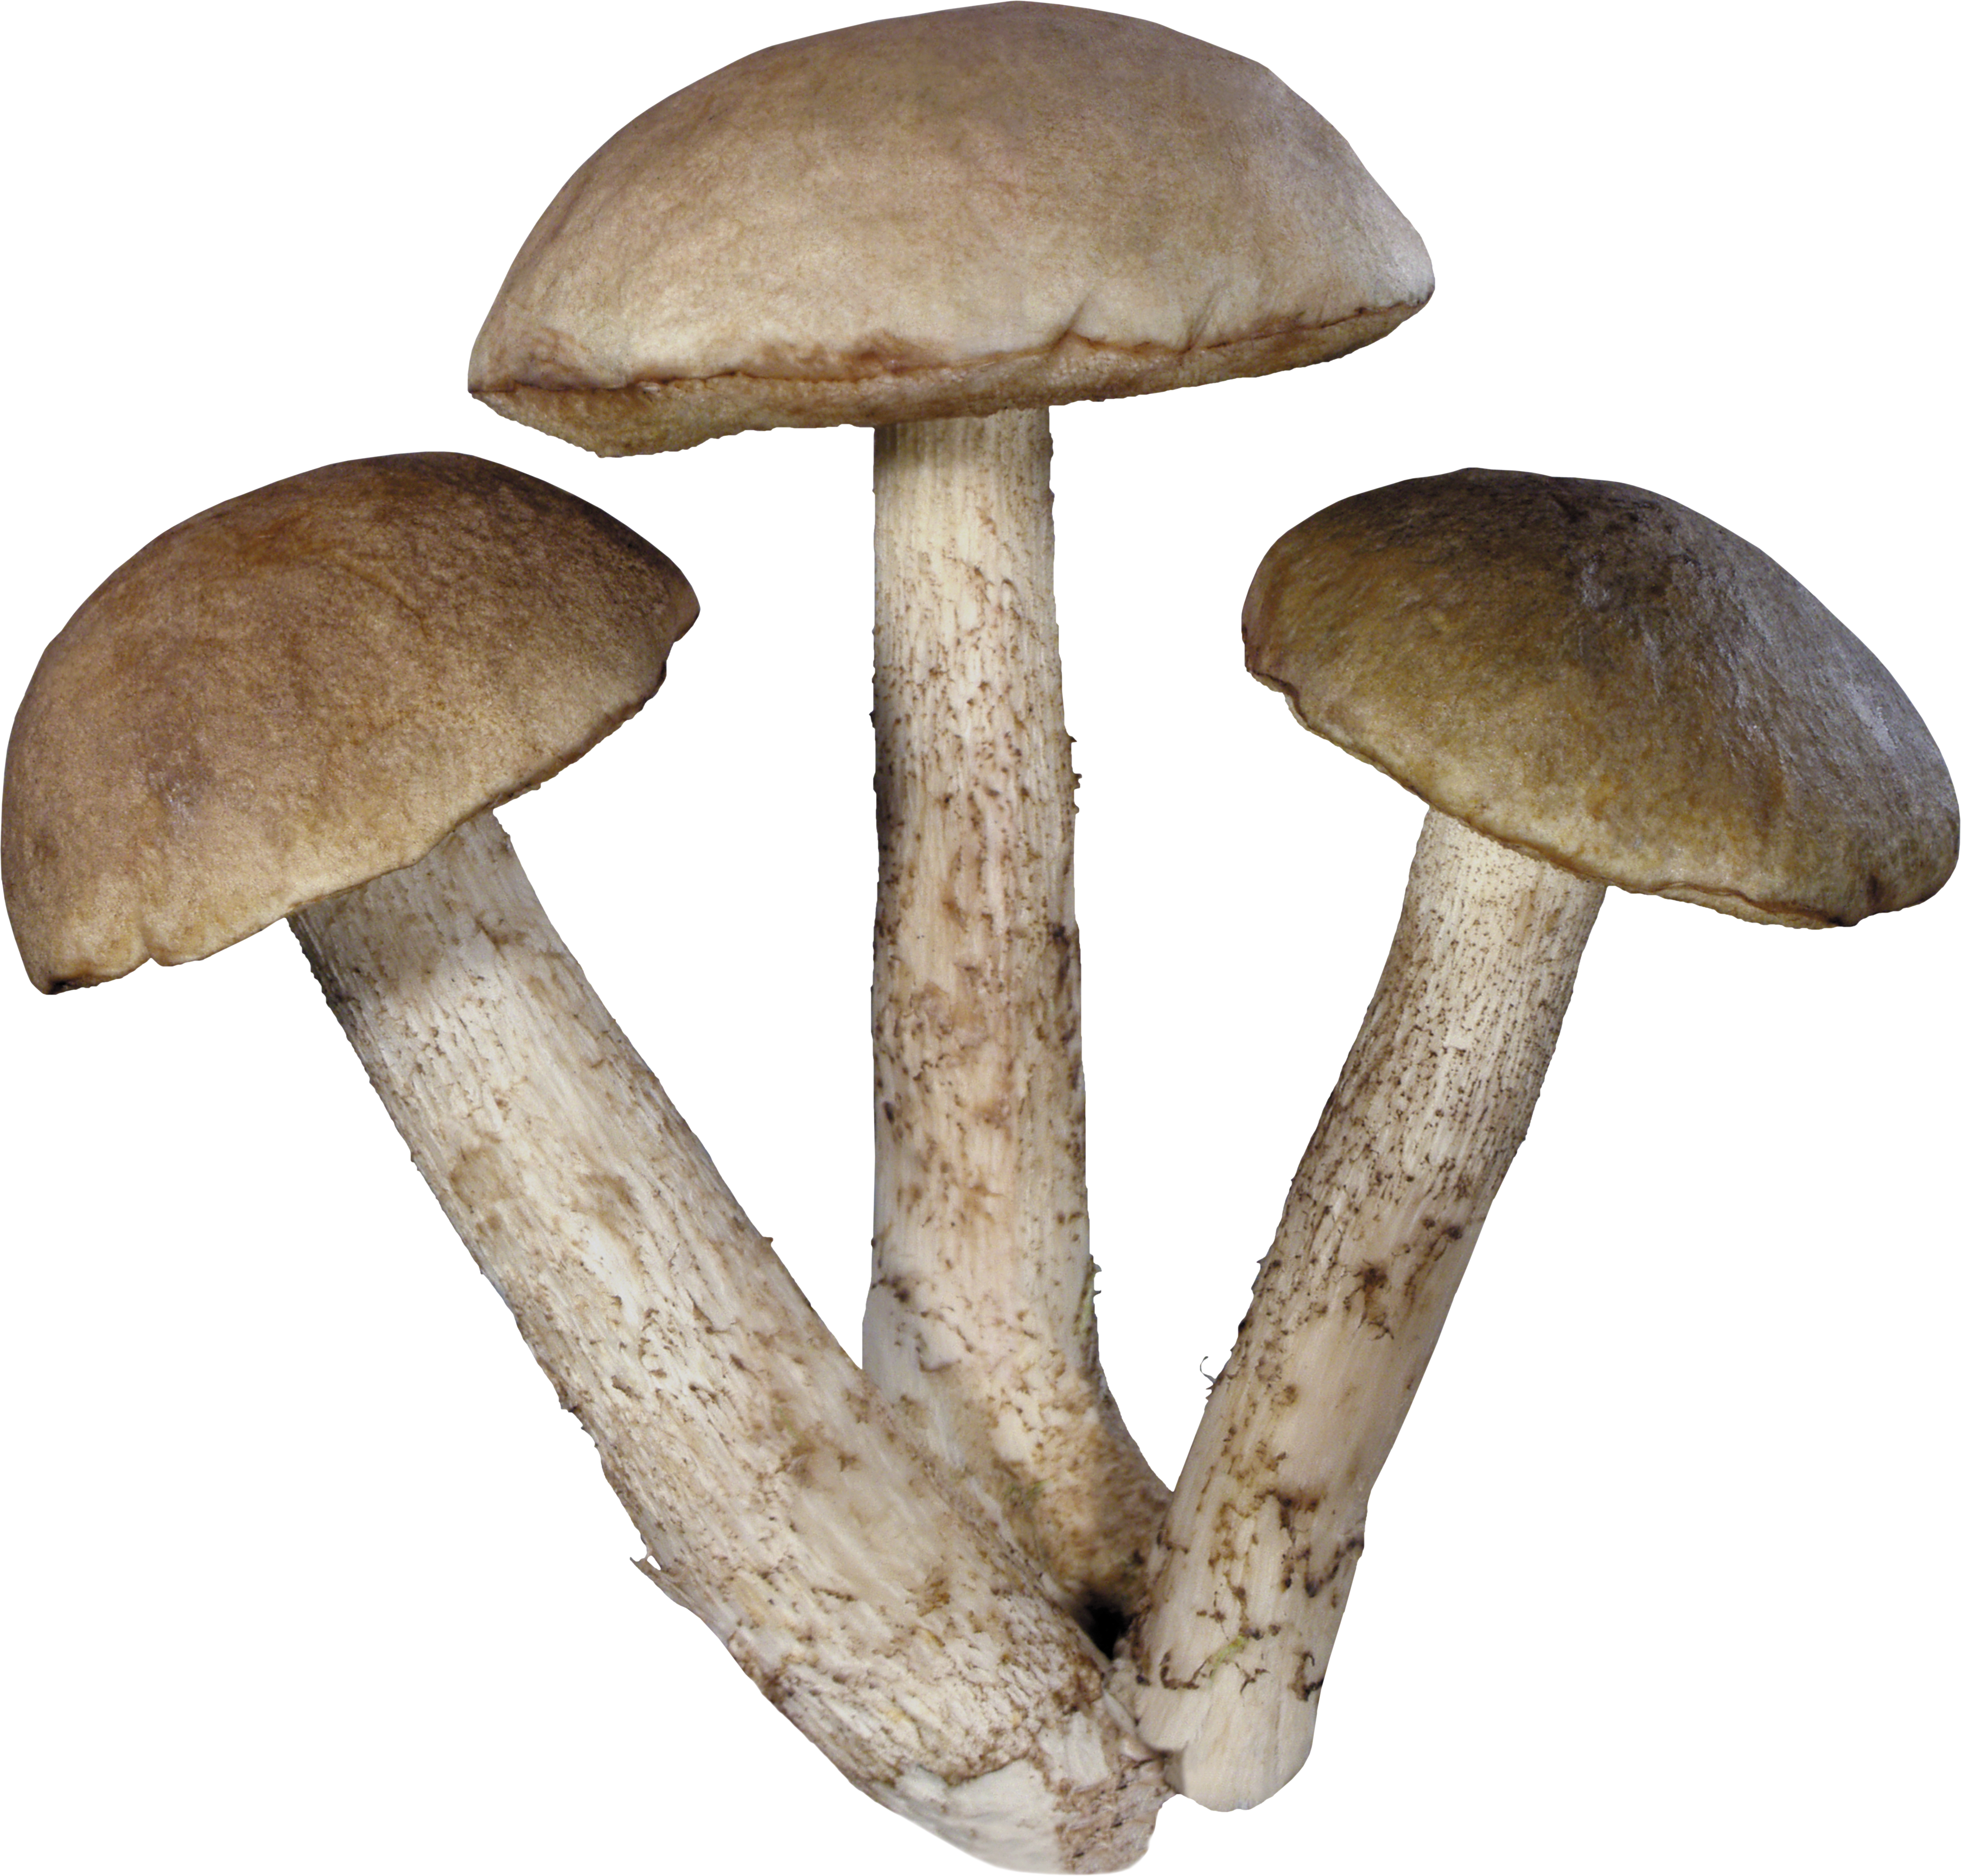 PNG File Name: Mushroom PlusP